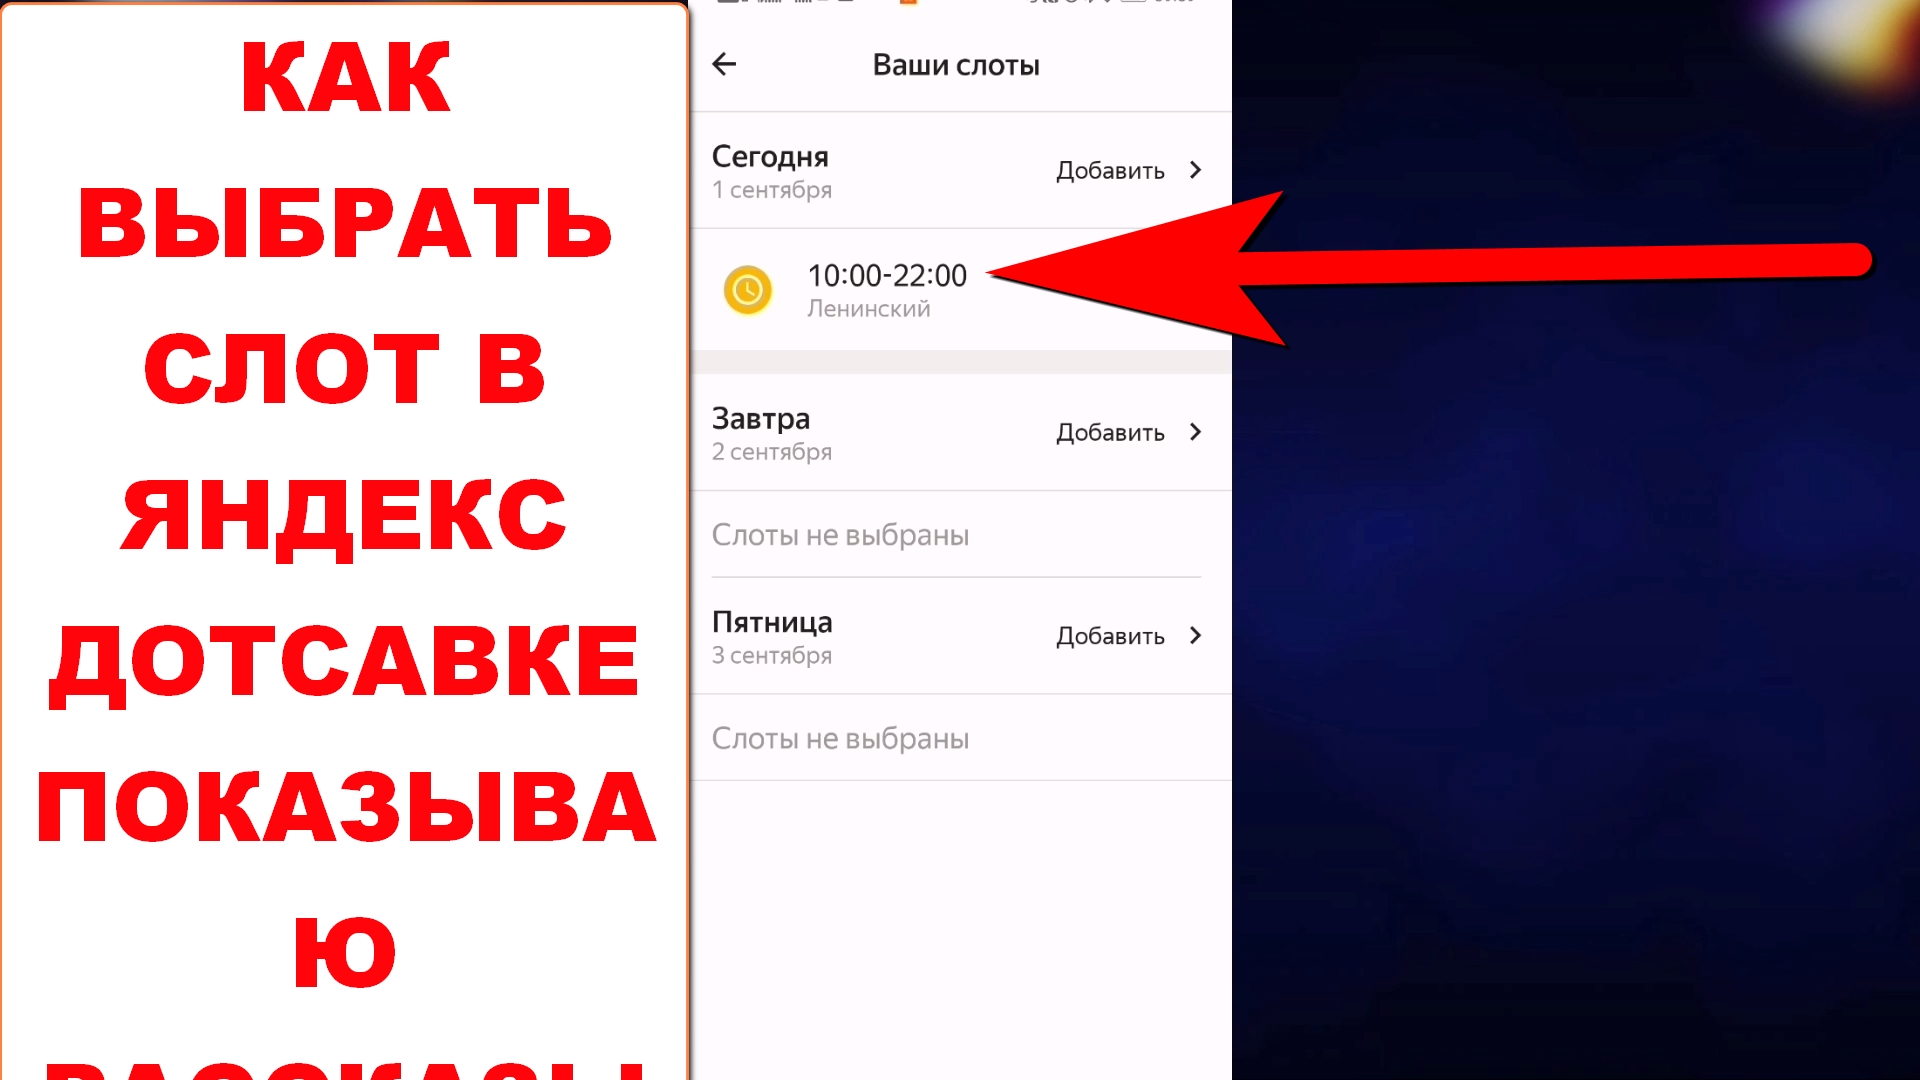 Слоты Яндекс про